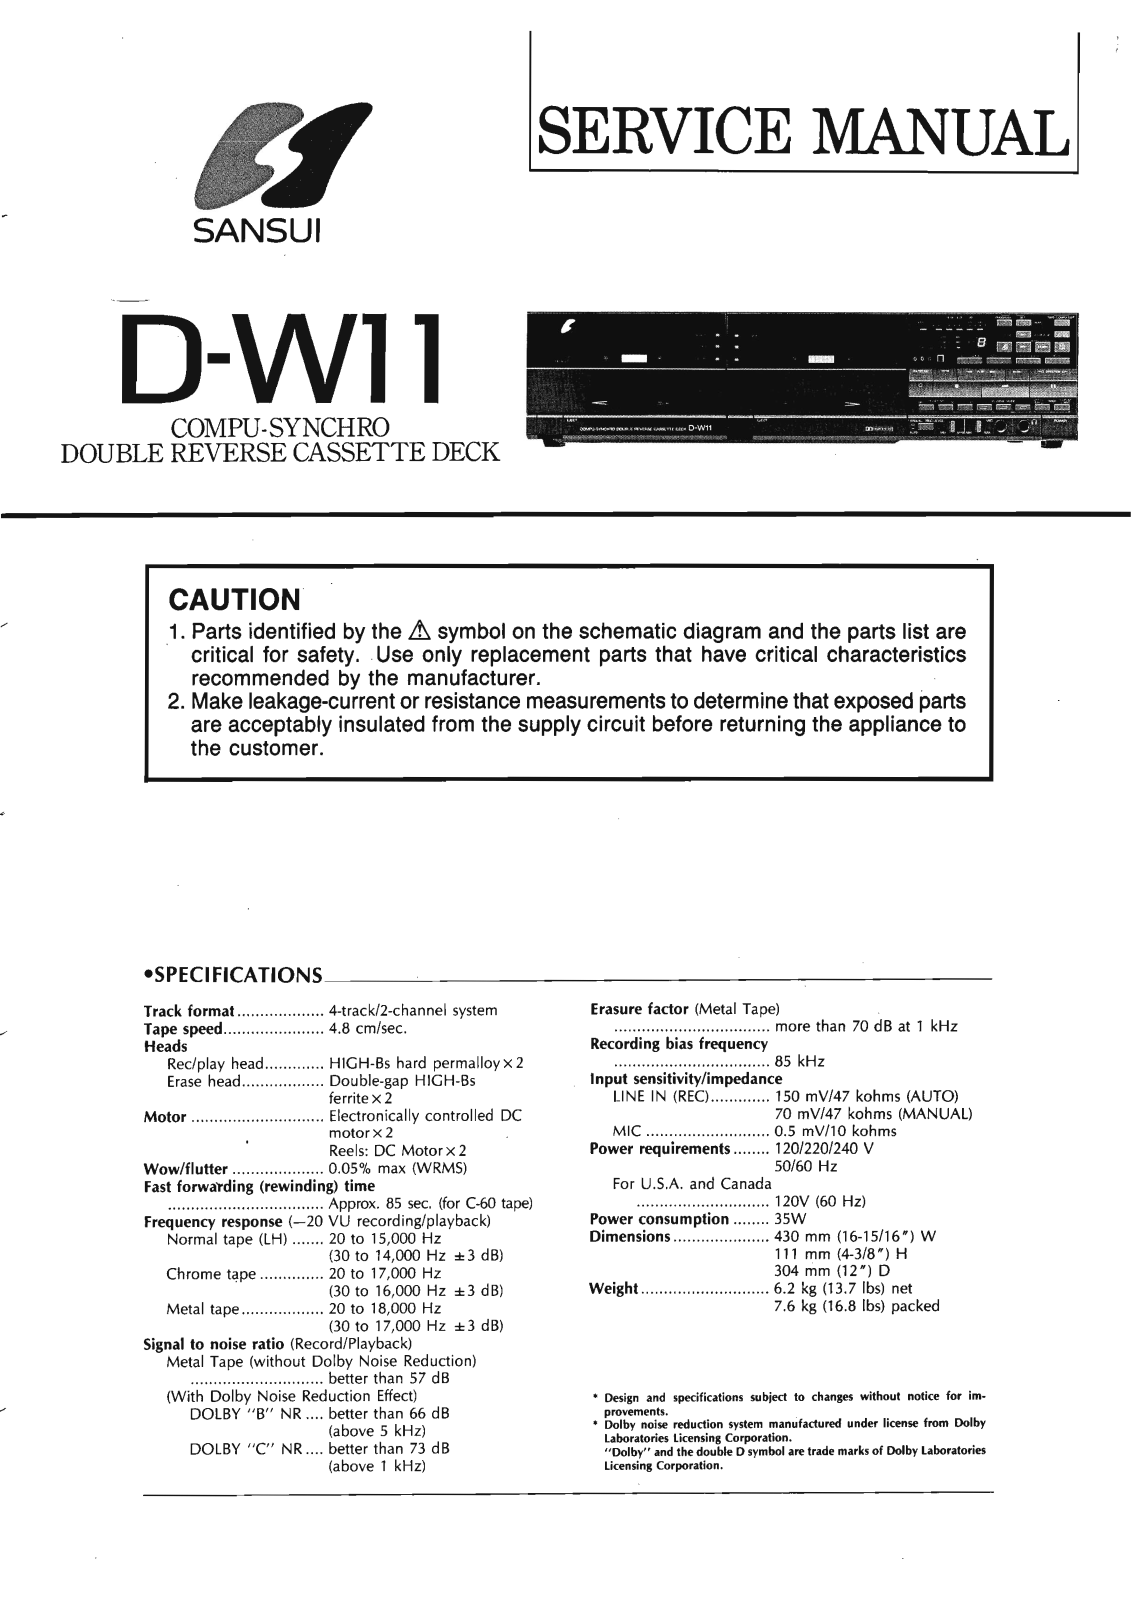 Sansui DW-11 Service Manual